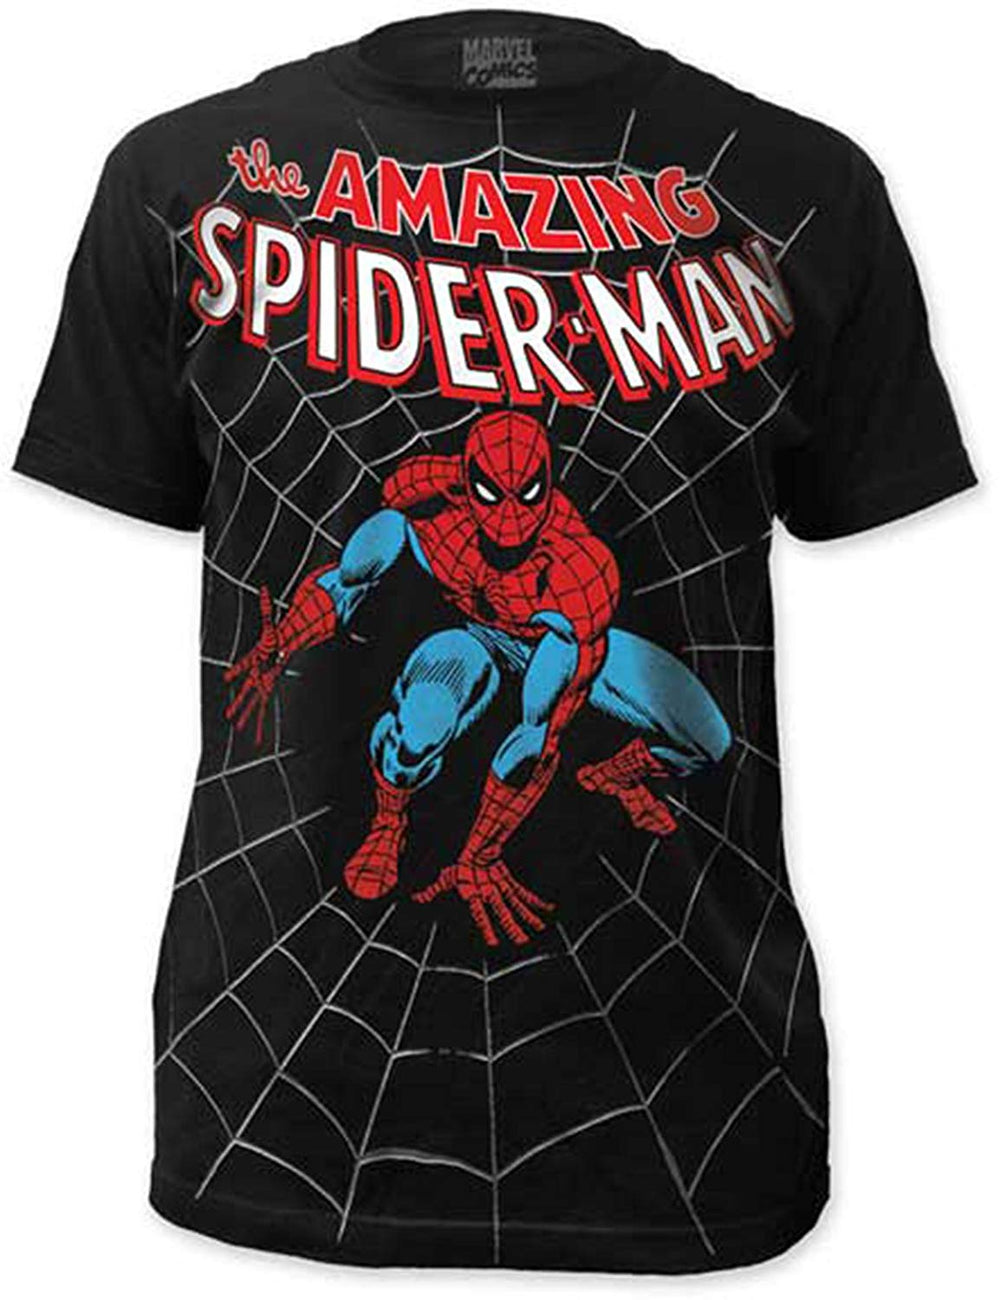 Spider-Man: Amazing Spider-Man Shirt - Black